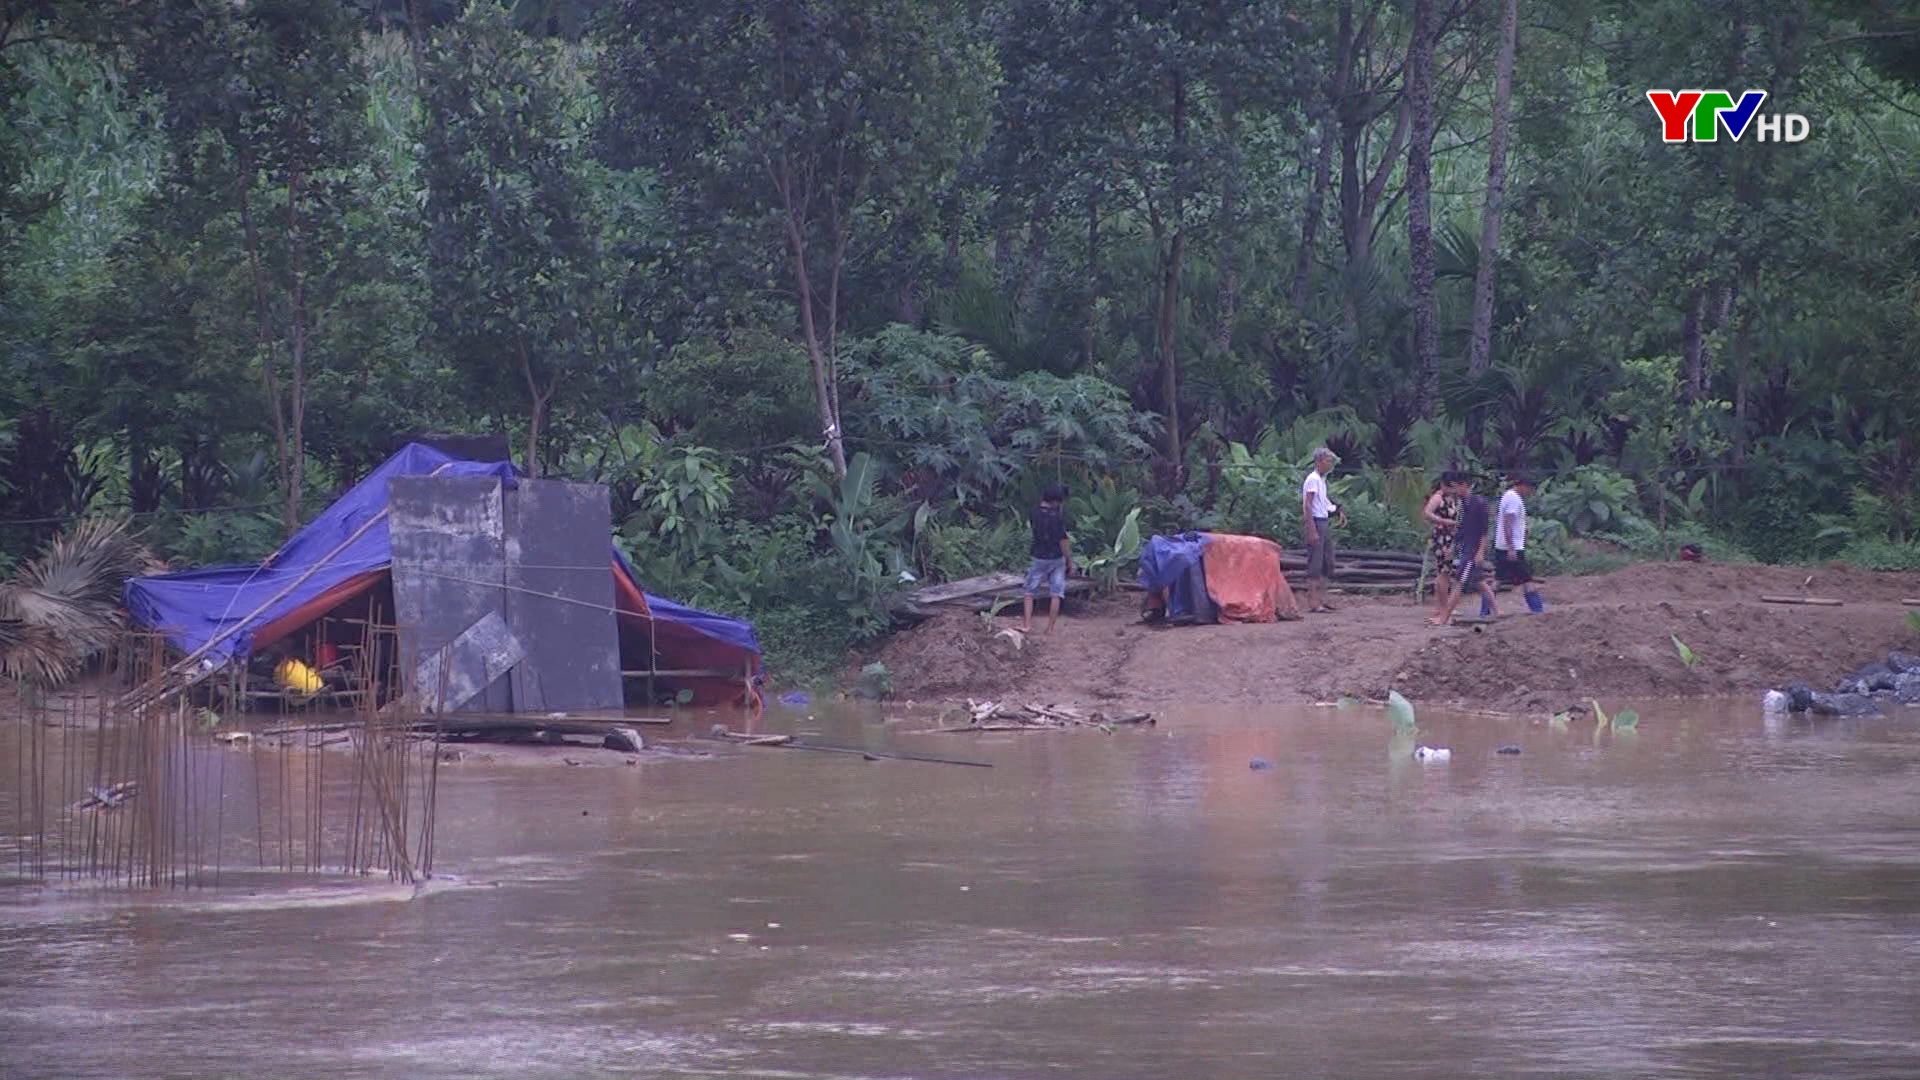 Mực nước sông Thao đang rút, không có nguy cơ gây ngập lụt